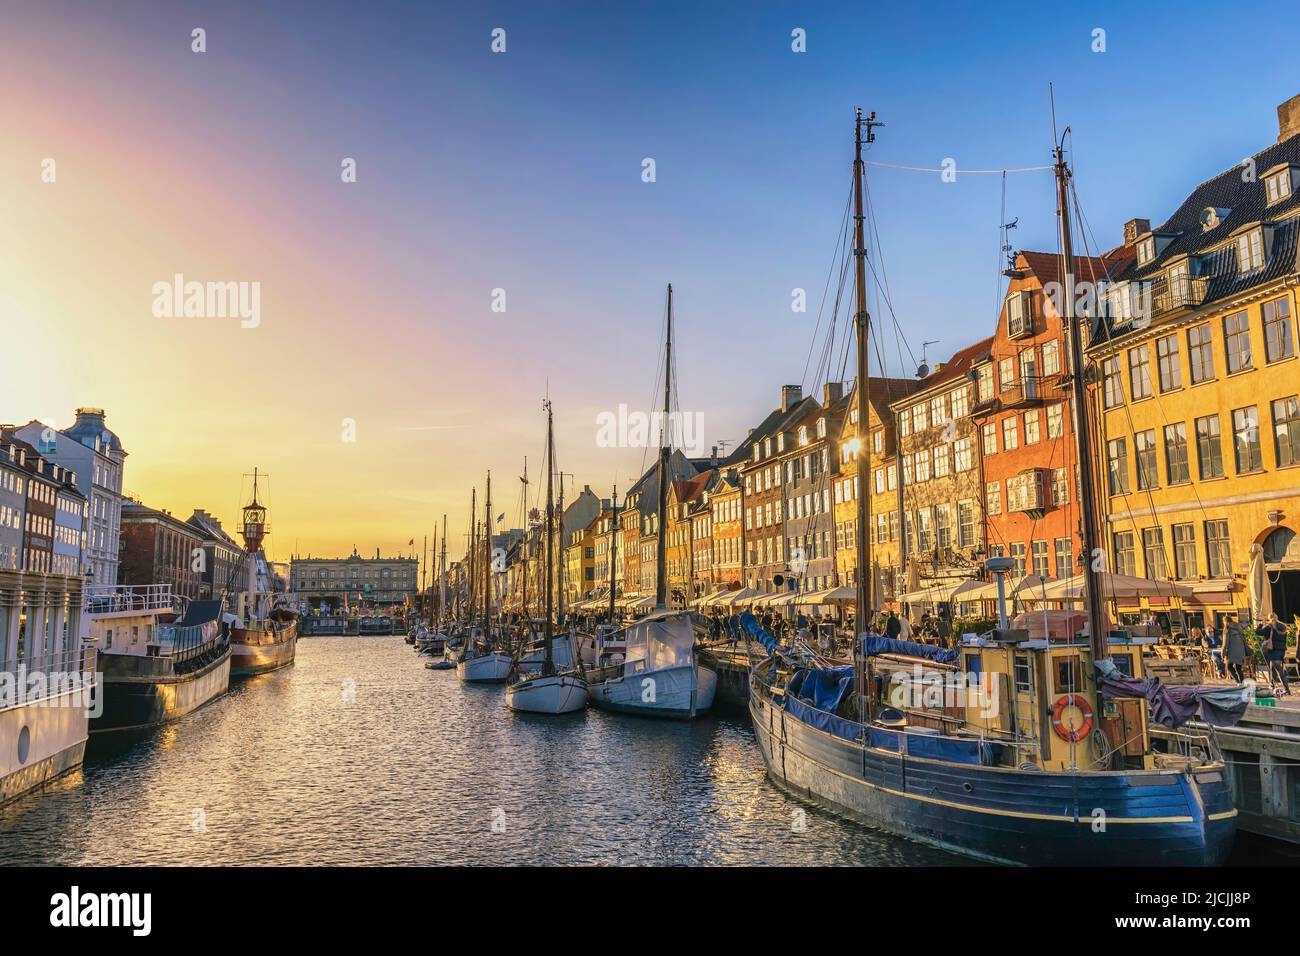 Copenhague Danemark, coucher de soleil sur la ville au port de Nyhavn avec maison colorée Banque D'Images